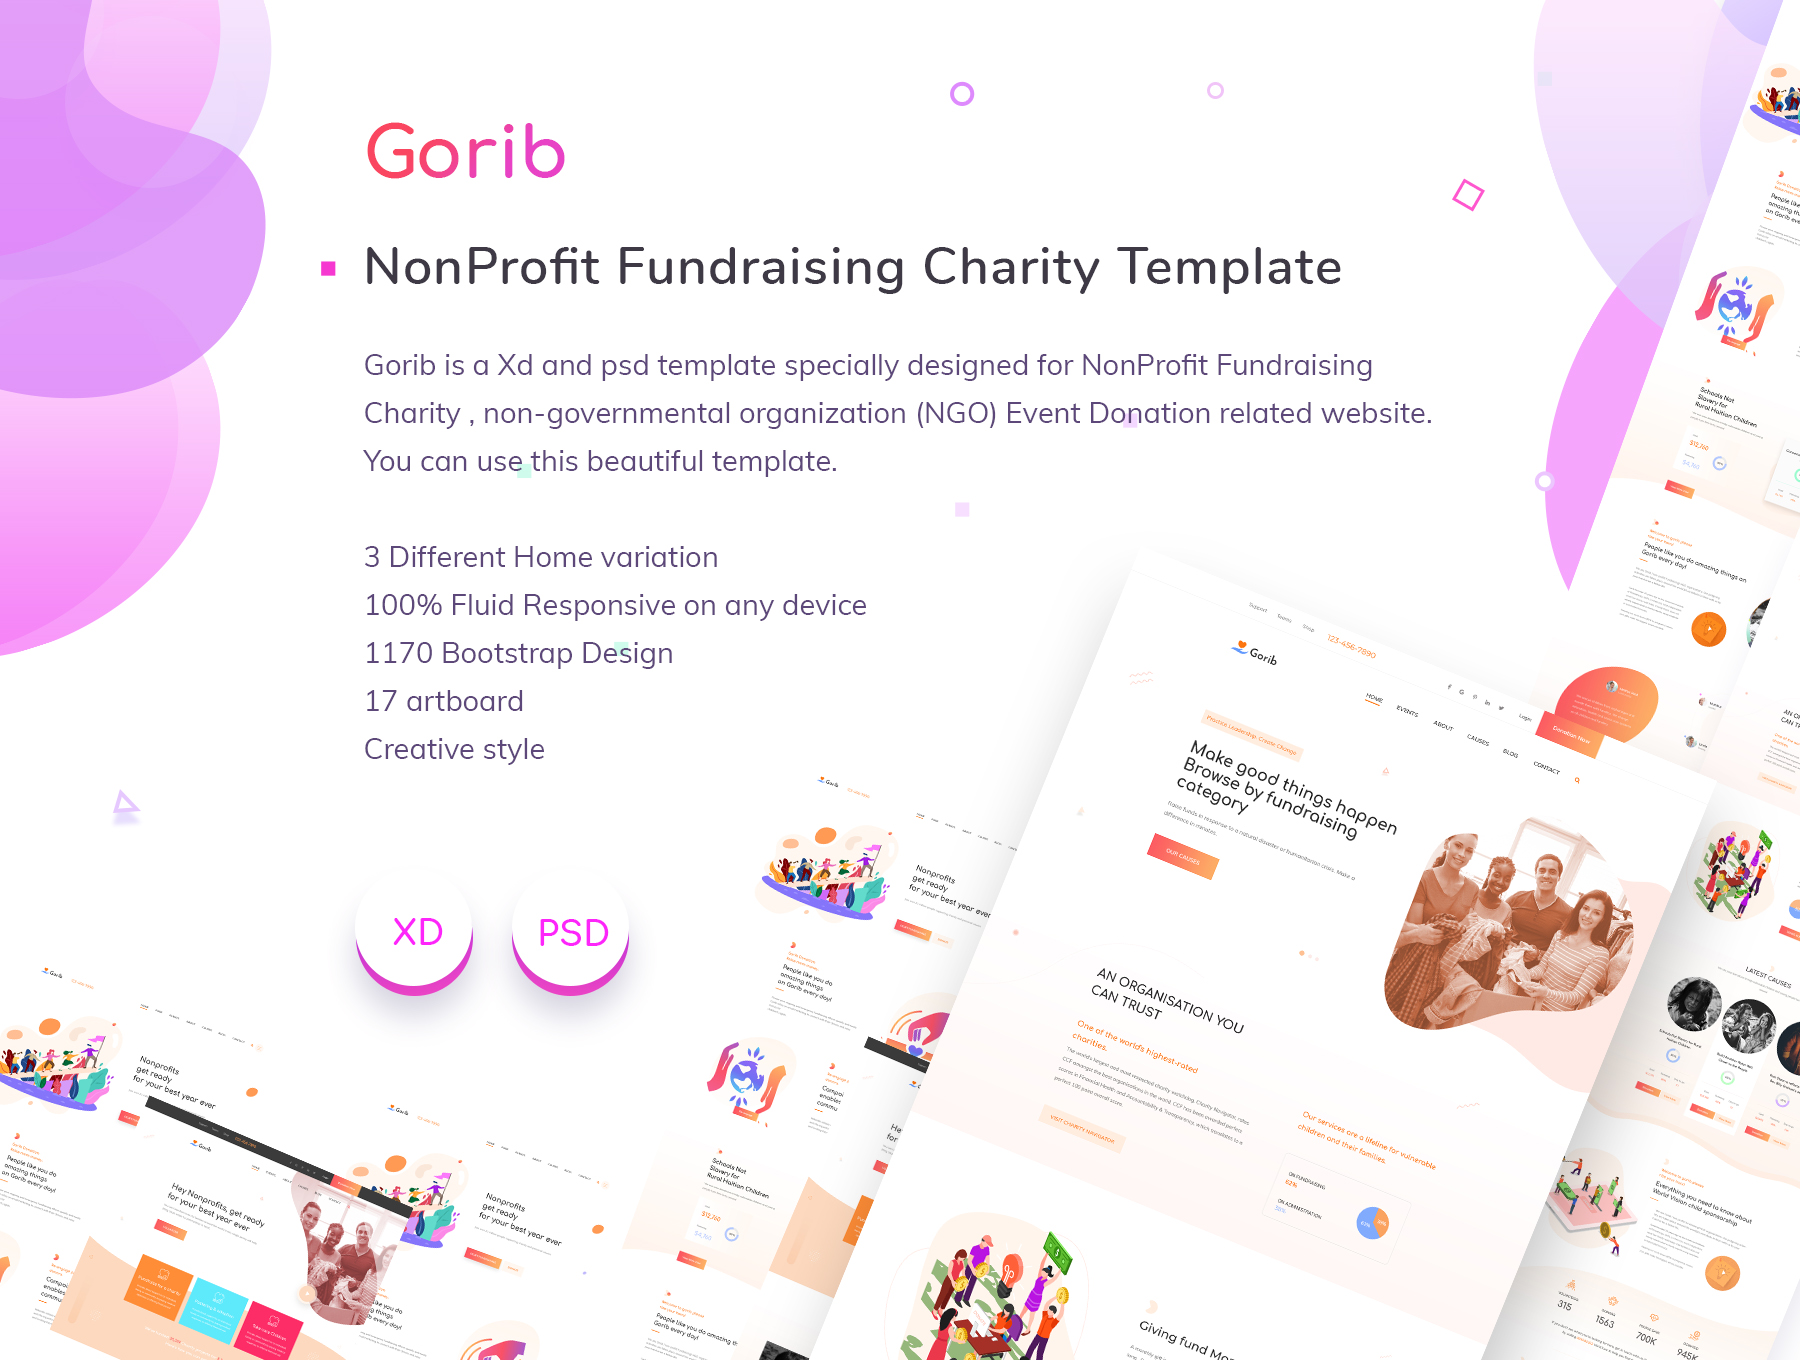 非盈利筹款慈善机构创意网页模板素材 Gorib Creati